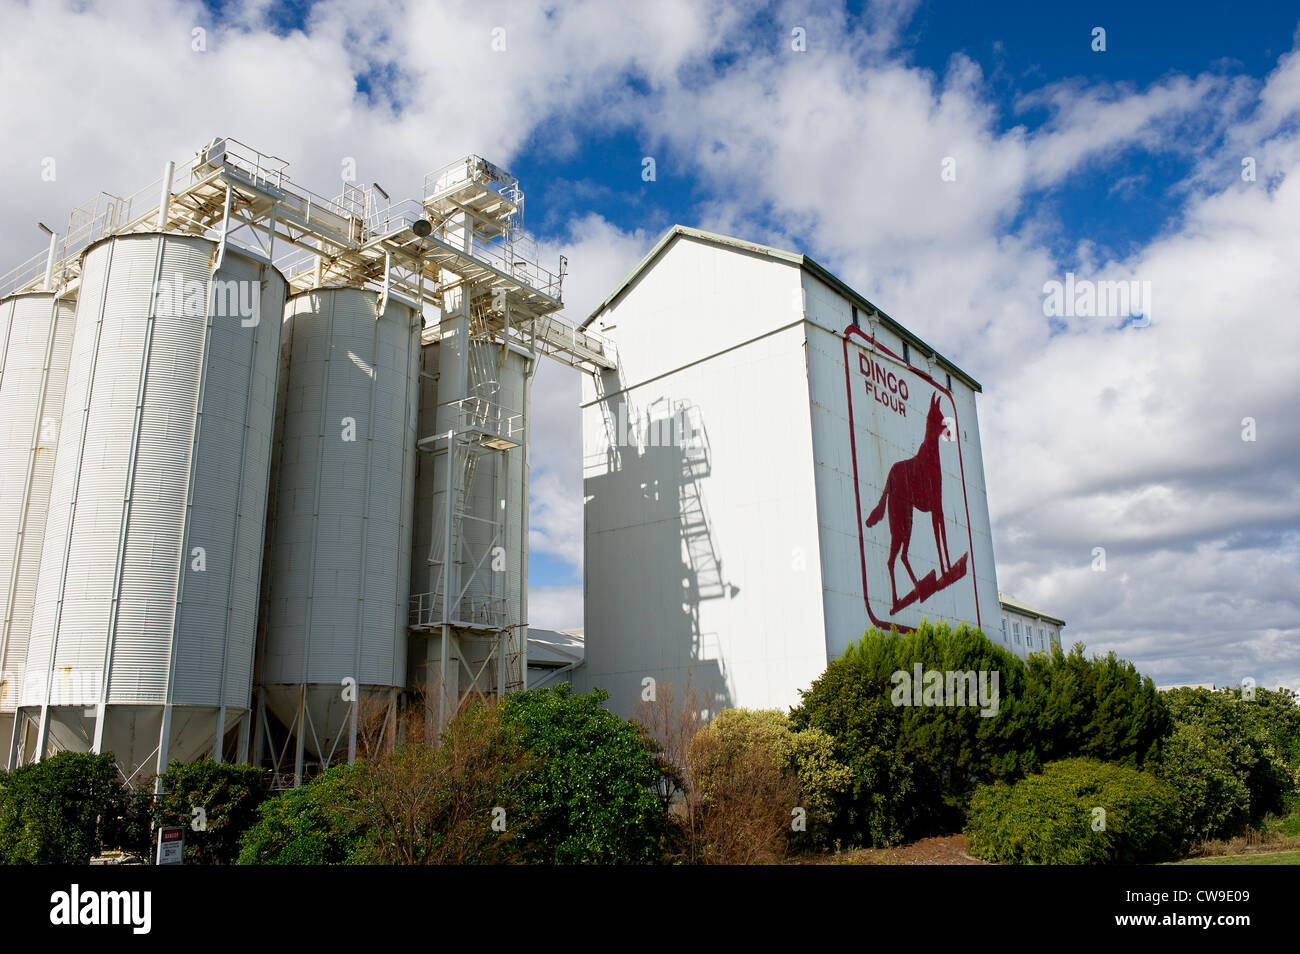 Fremantle en Australie occidentale - Le Dingo la farine sur le côté du grand rouleau Sud Flour Mills à Fremantle, Australie occidentale Banque D'Images